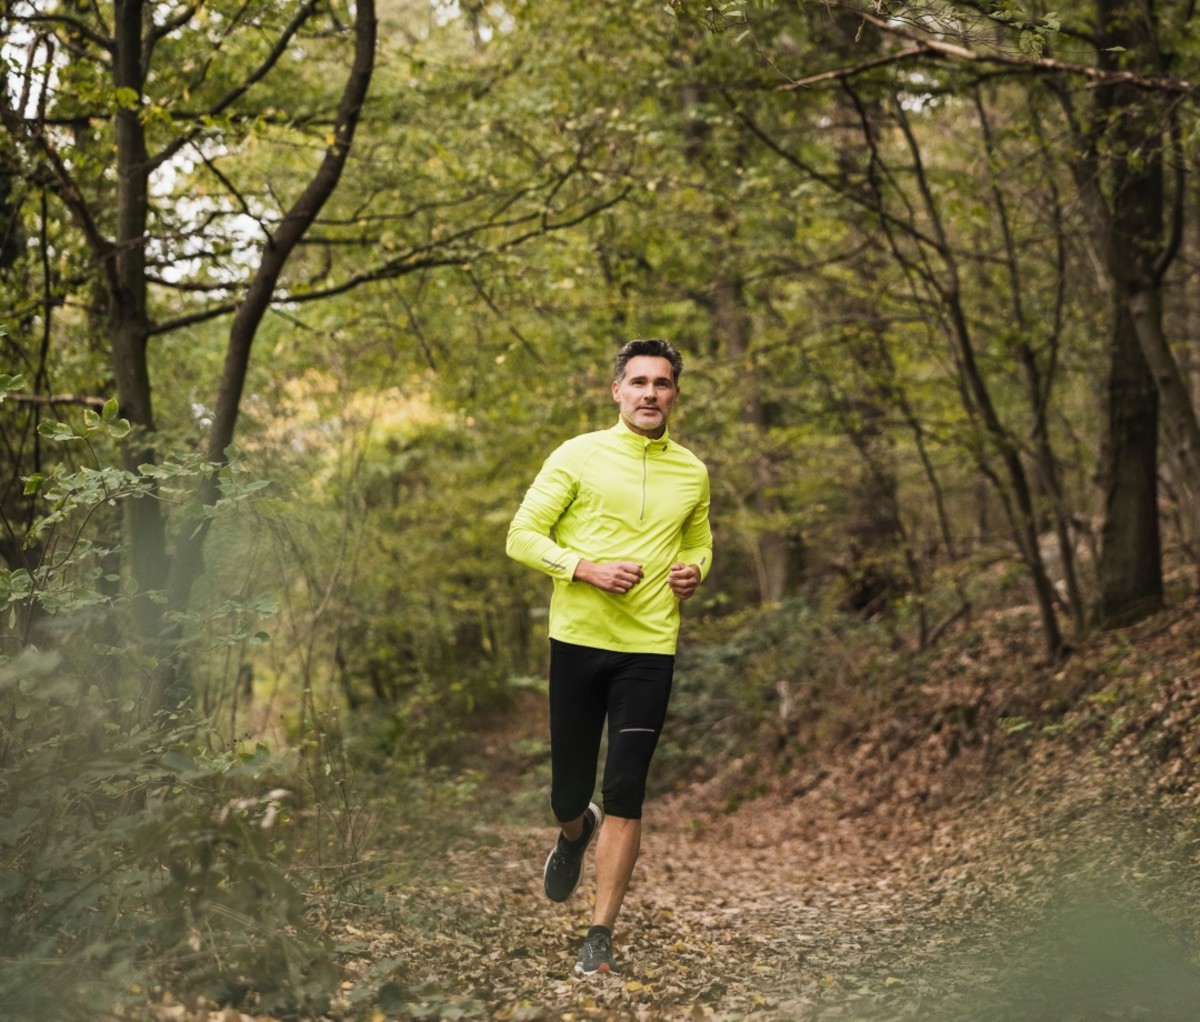 Man in a yellow shirt running through a forest. running benefits